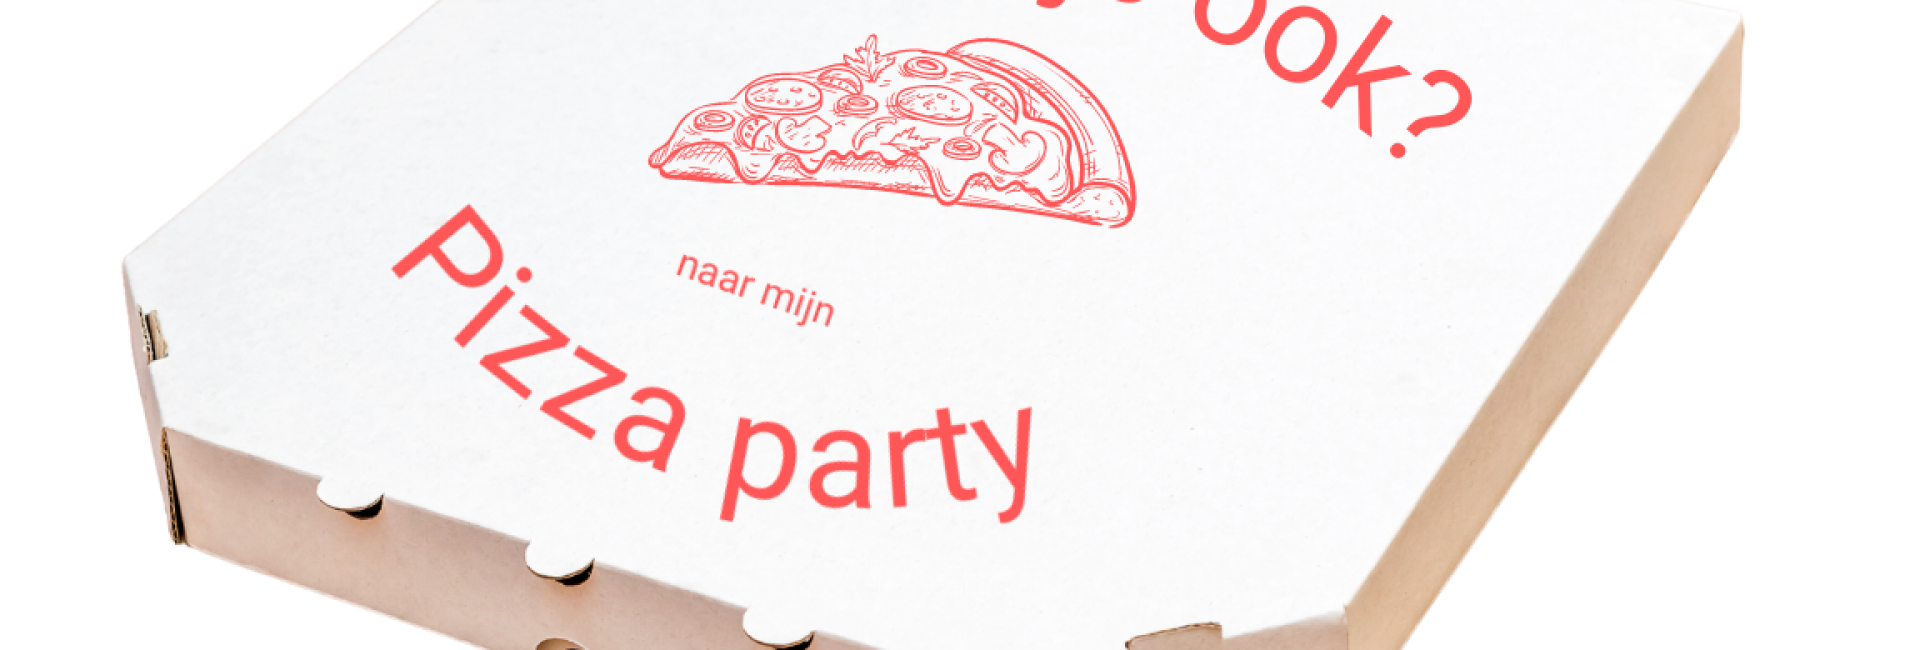 Pizzadoos gevouwen uitnodiging Pizza party